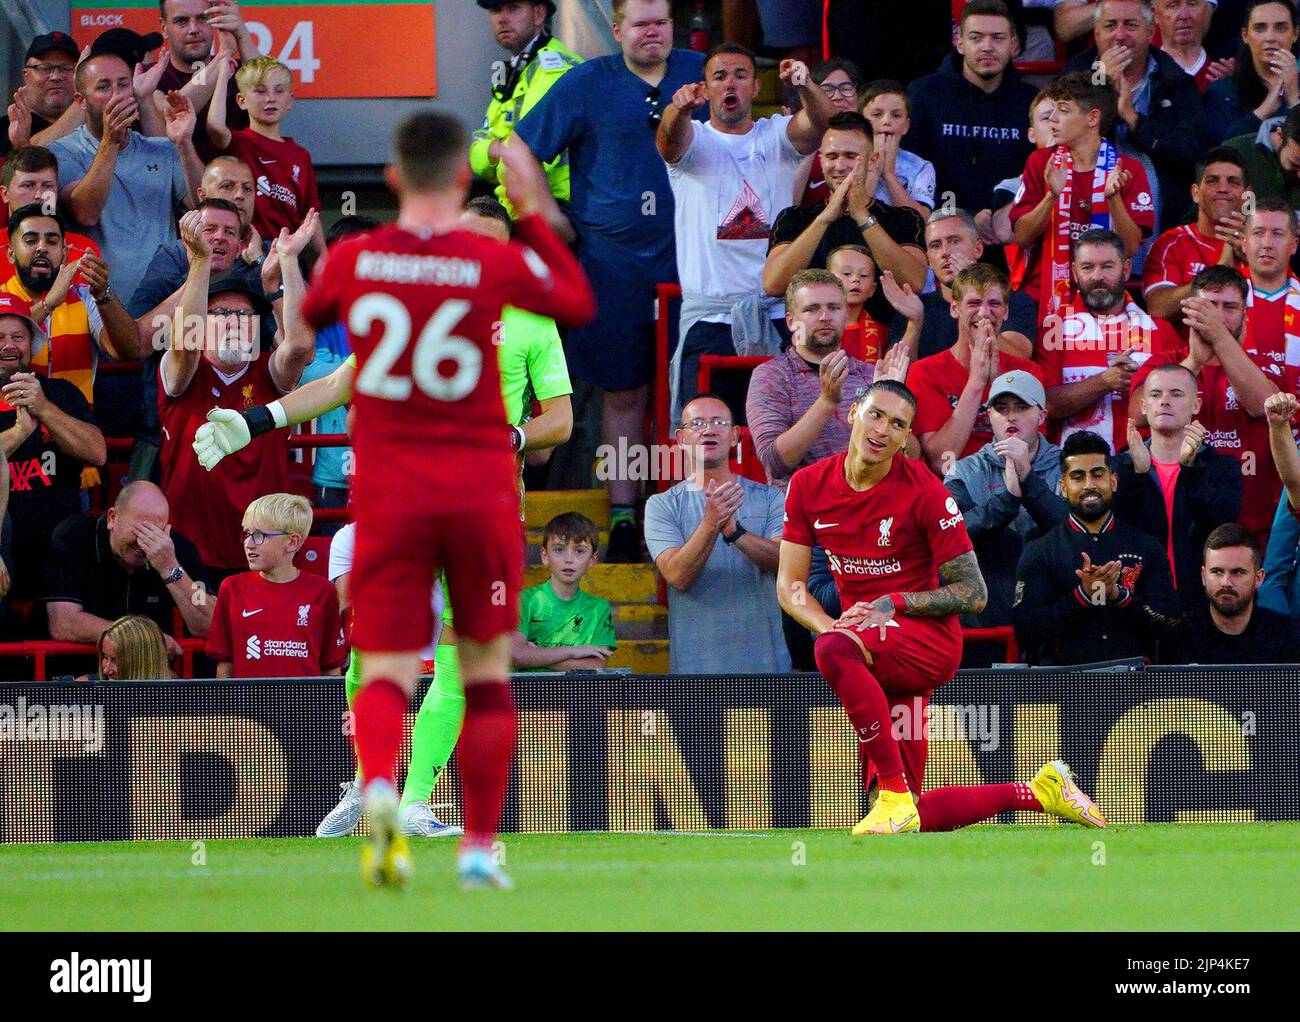 Darwin Nunez (derecha) del Liverpool reacciona después de una oportunidad perdida durante el partido de la Premier League en Anfield, Liverpool. Fecha de la foto: Lunes 15 de agosto de 2022. Foto de stock